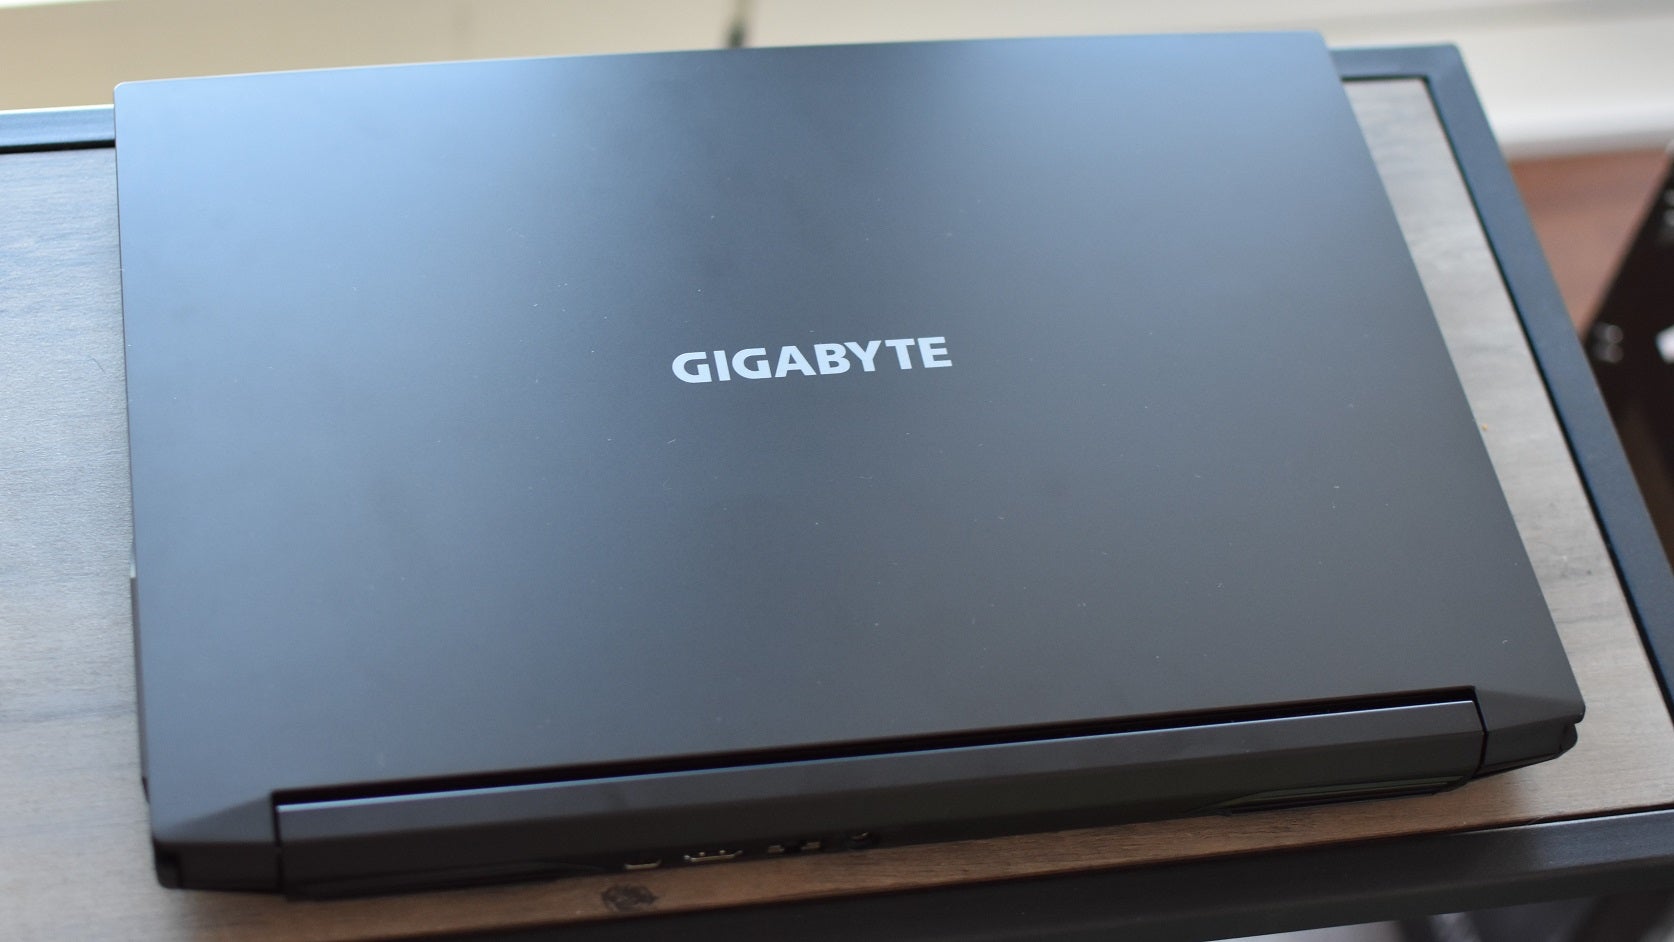 Gigabyte g5 kc. Ноутбук Gigabyte g5 KF. Ноутбук игровой Gigabyte g5 KD-52ee123sd. Gigabyte g5 KF RTX 4060. Gigabyte g5 3060 Laptop.